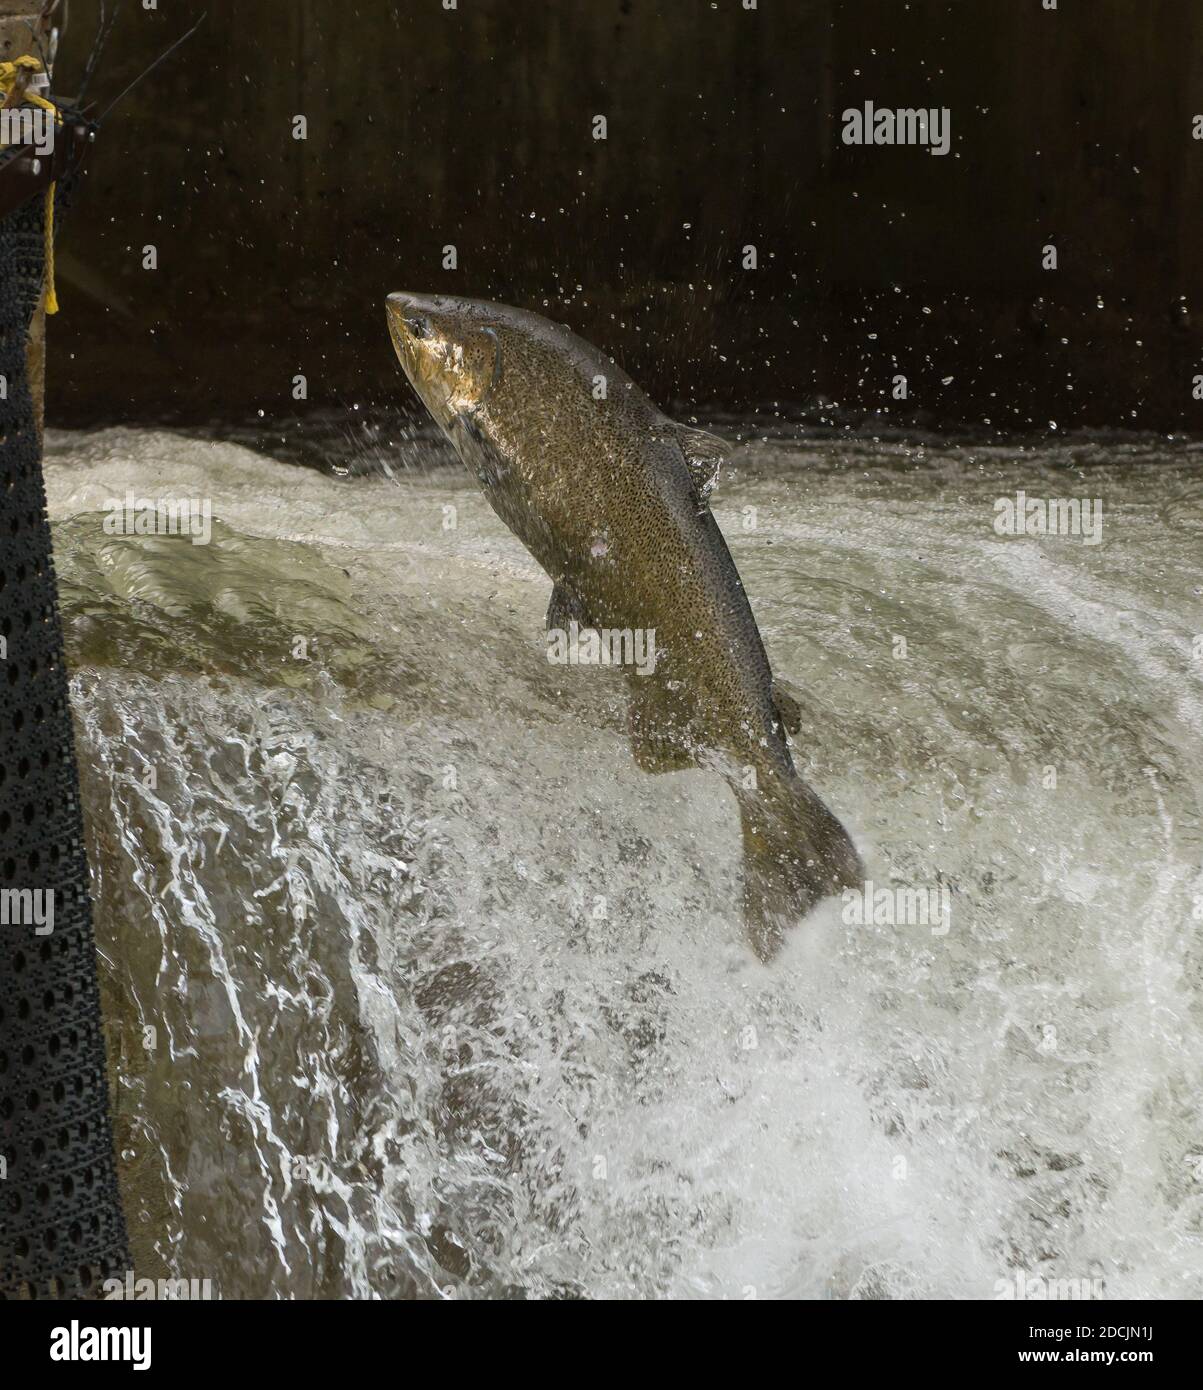 Saumon quinnat sautant au barrage sur le ruisseau Bowmanville, à Bowmanville, en Ontario. Ces poissons s'enfuient du lac Ontario pour frayer en septembre Banque D'Images